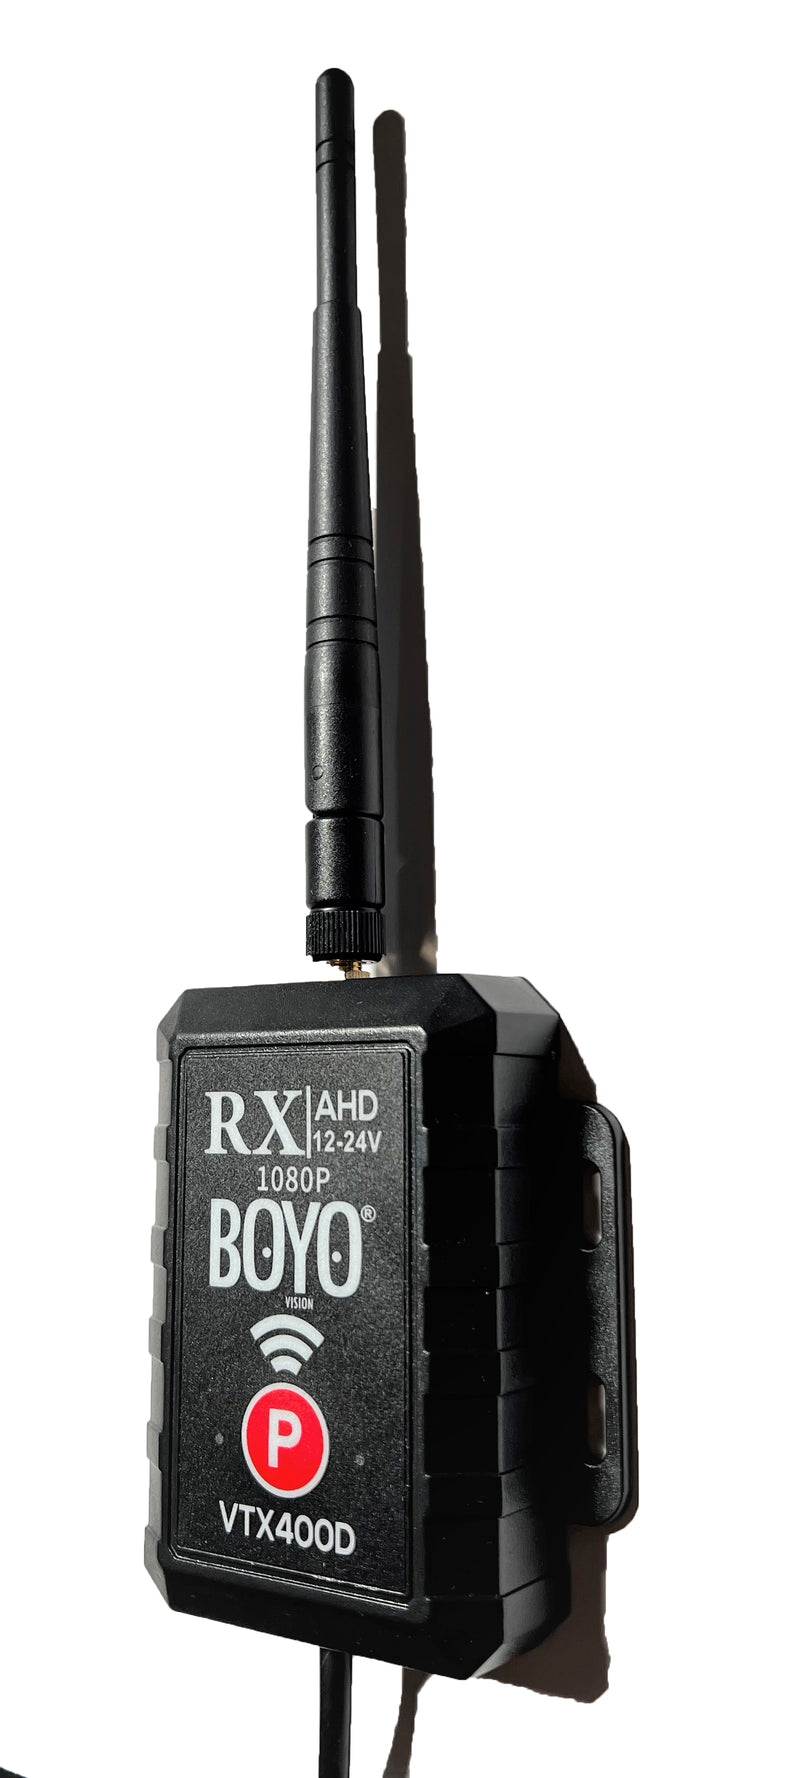 BOYO VTX400D - 2.4 GHz AHD Wireless Transmitter and Receiver